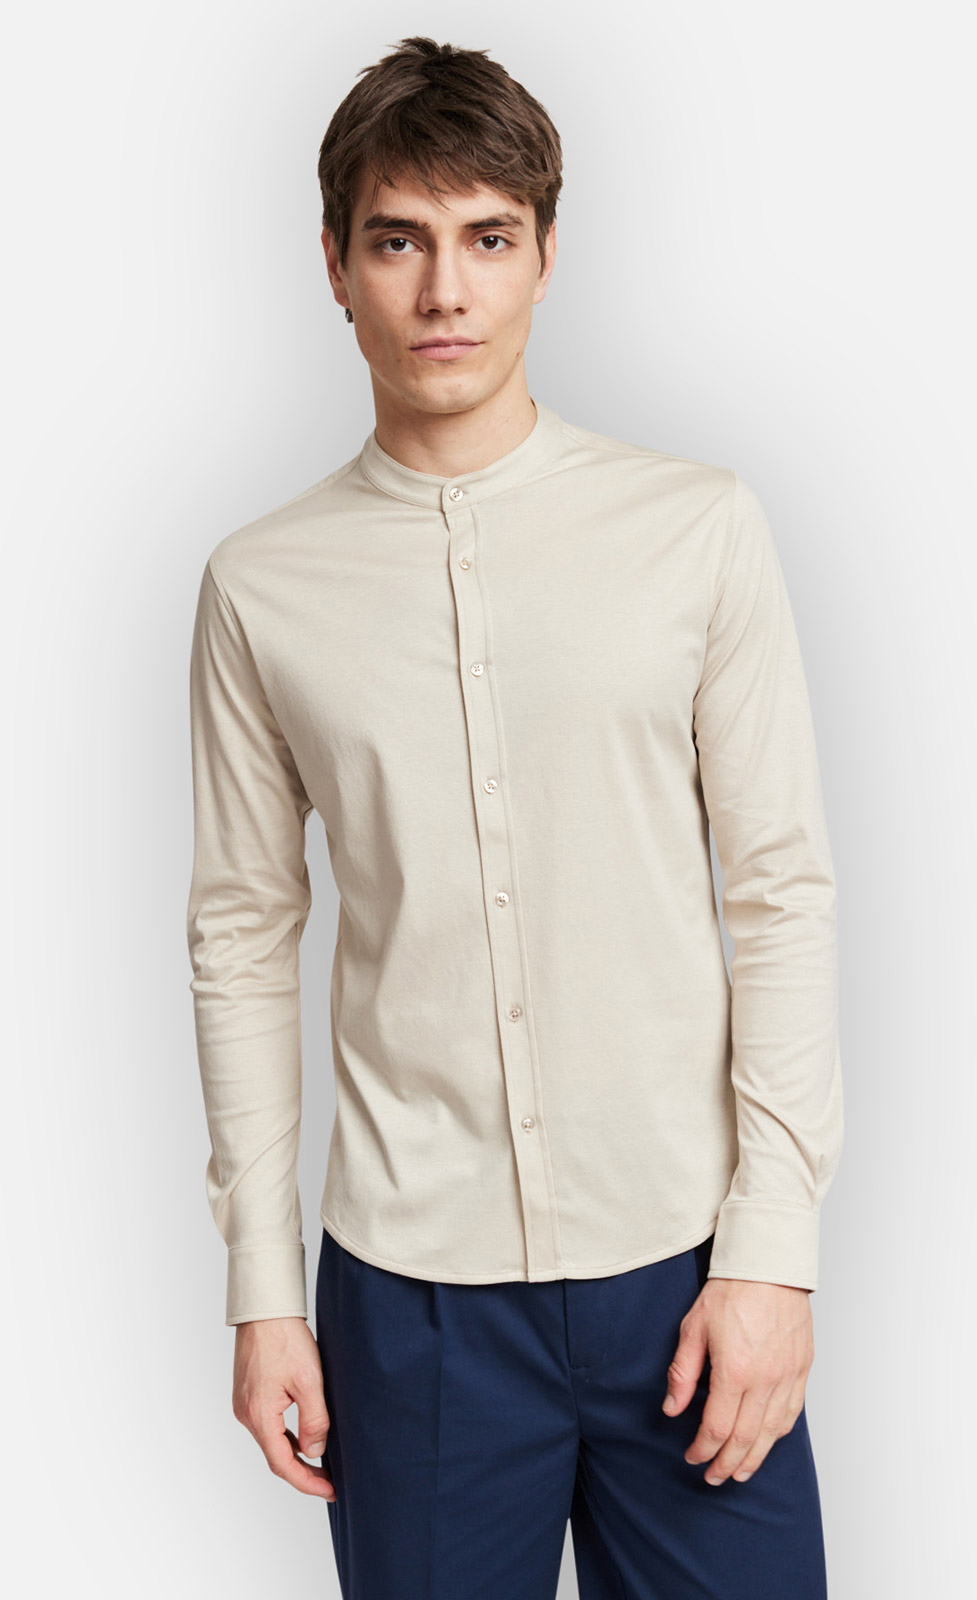 Antonio - Jerseyhemd aus merzerisierter Baumwolle